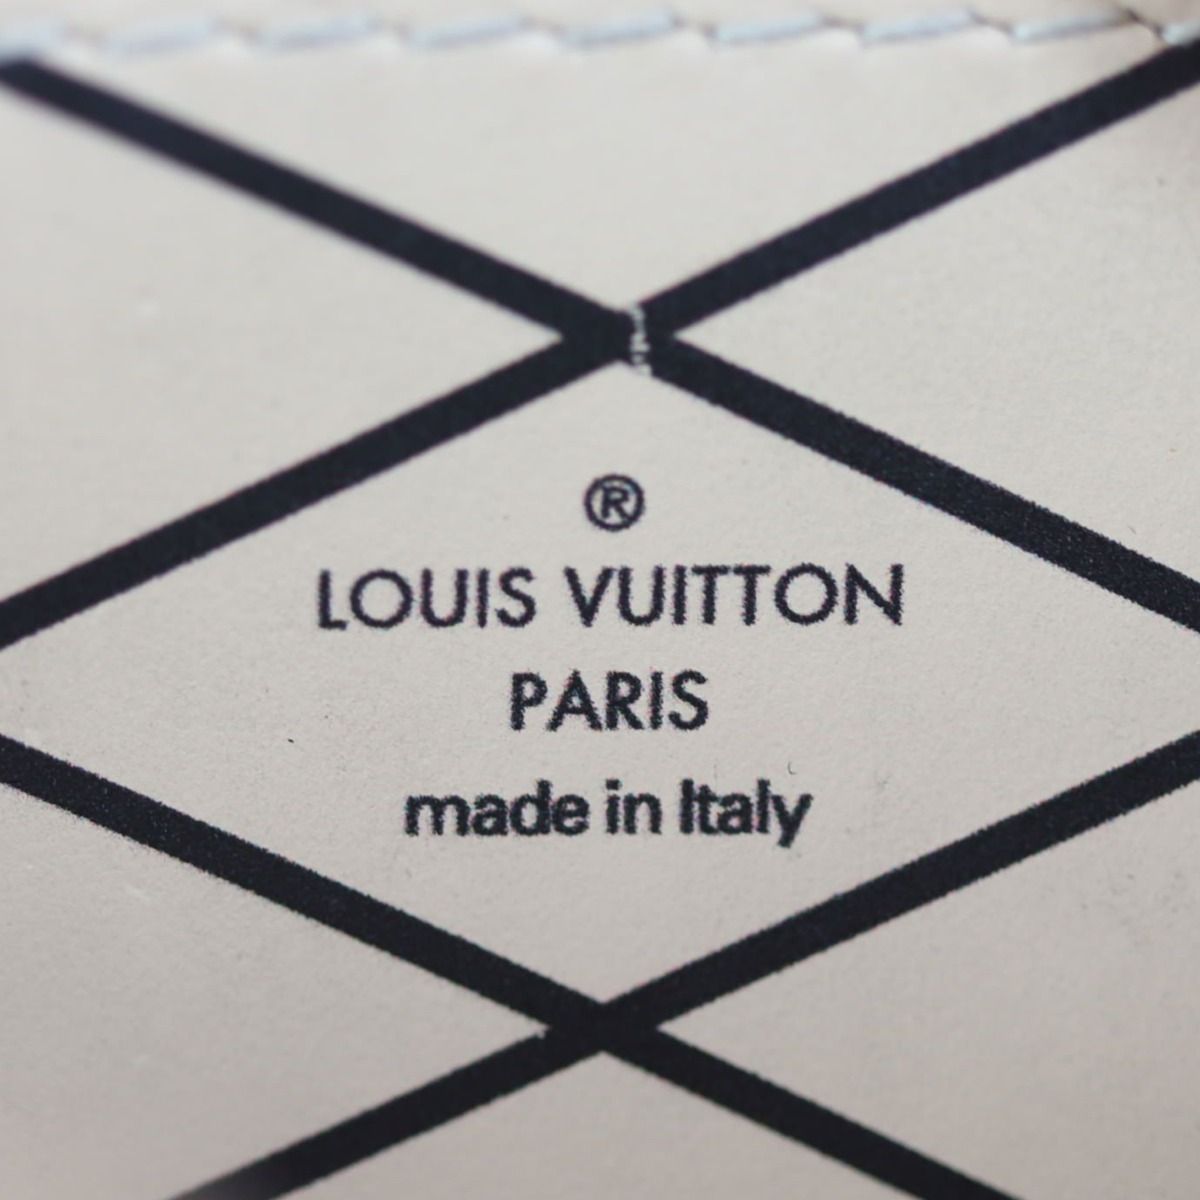 ✨NEW ARRIVAL✨ Louis Vuitton Black Epi Vertical Trunk Pochette